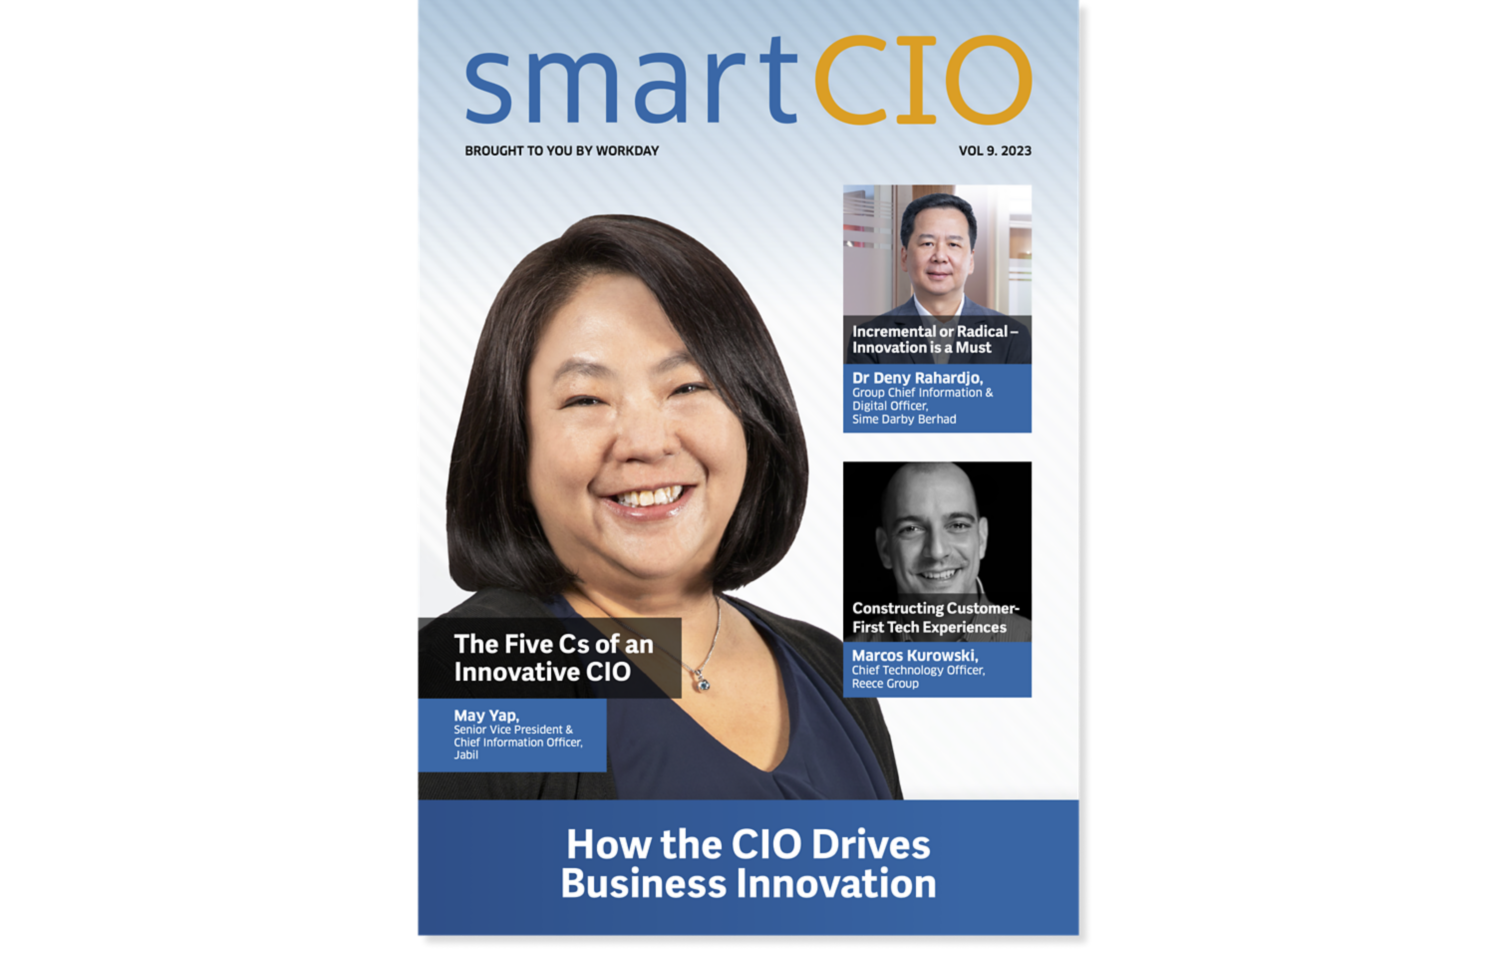 smartCIO 9th Edition